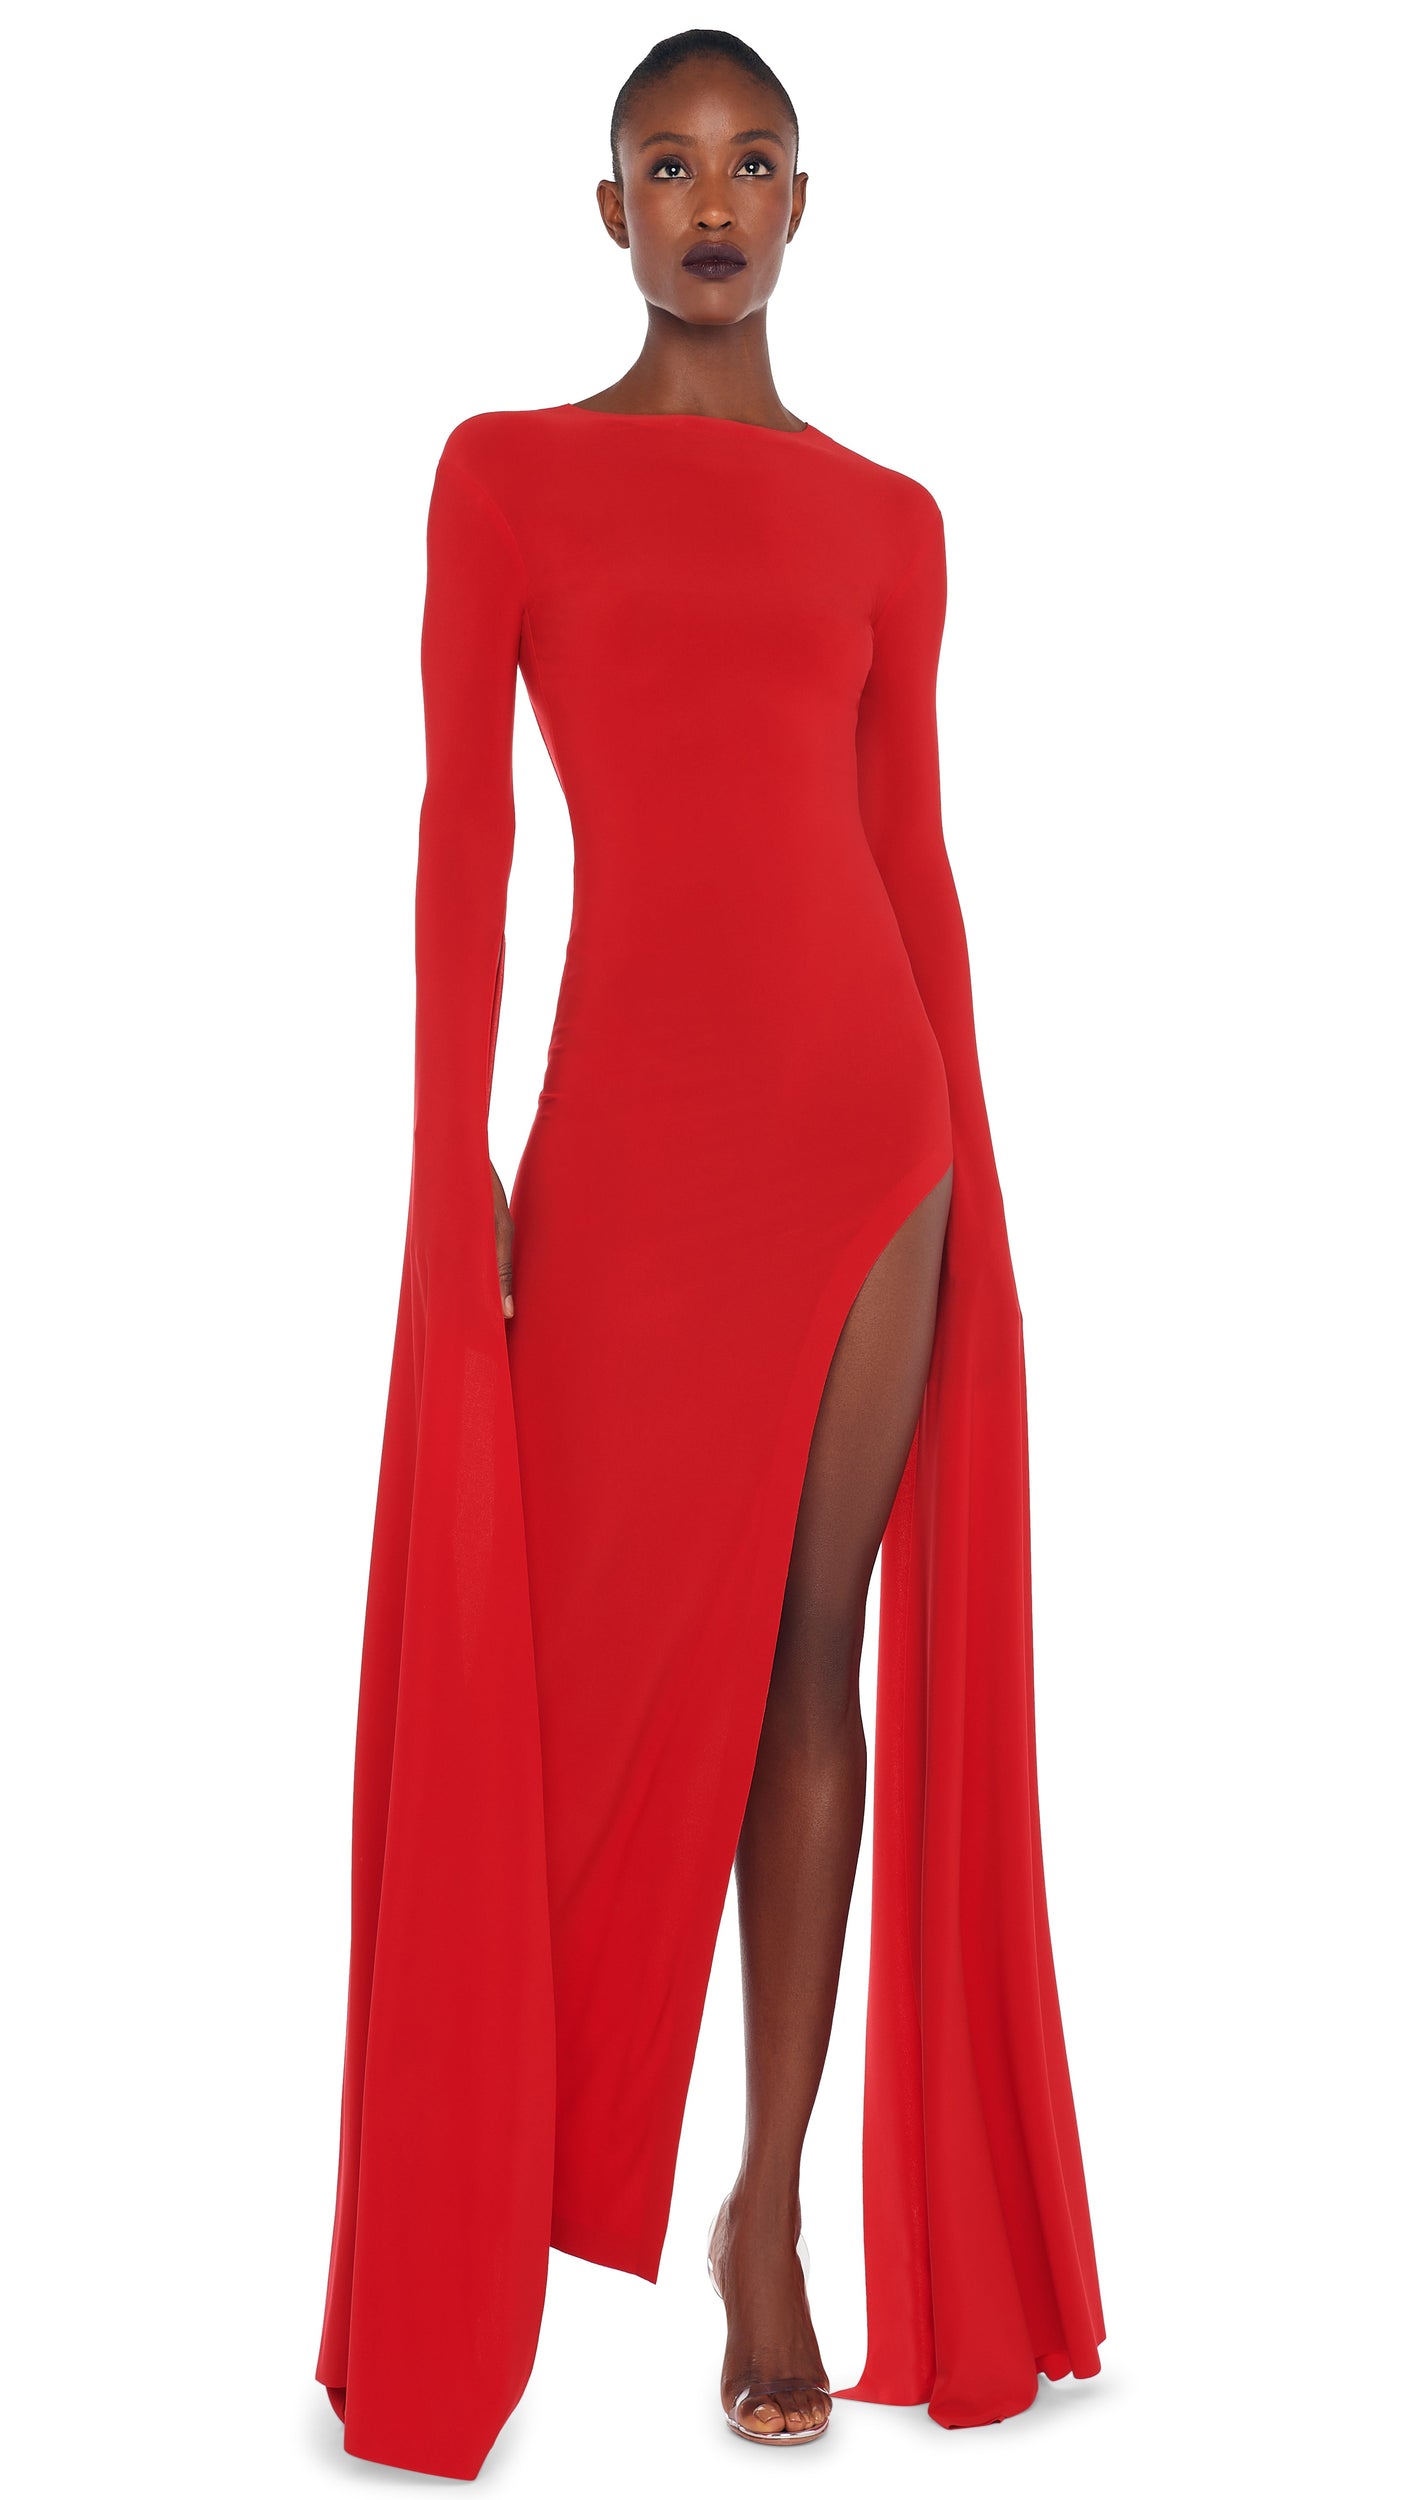 Buy Full Sleeve Gown Dress For Girls Online Shopping